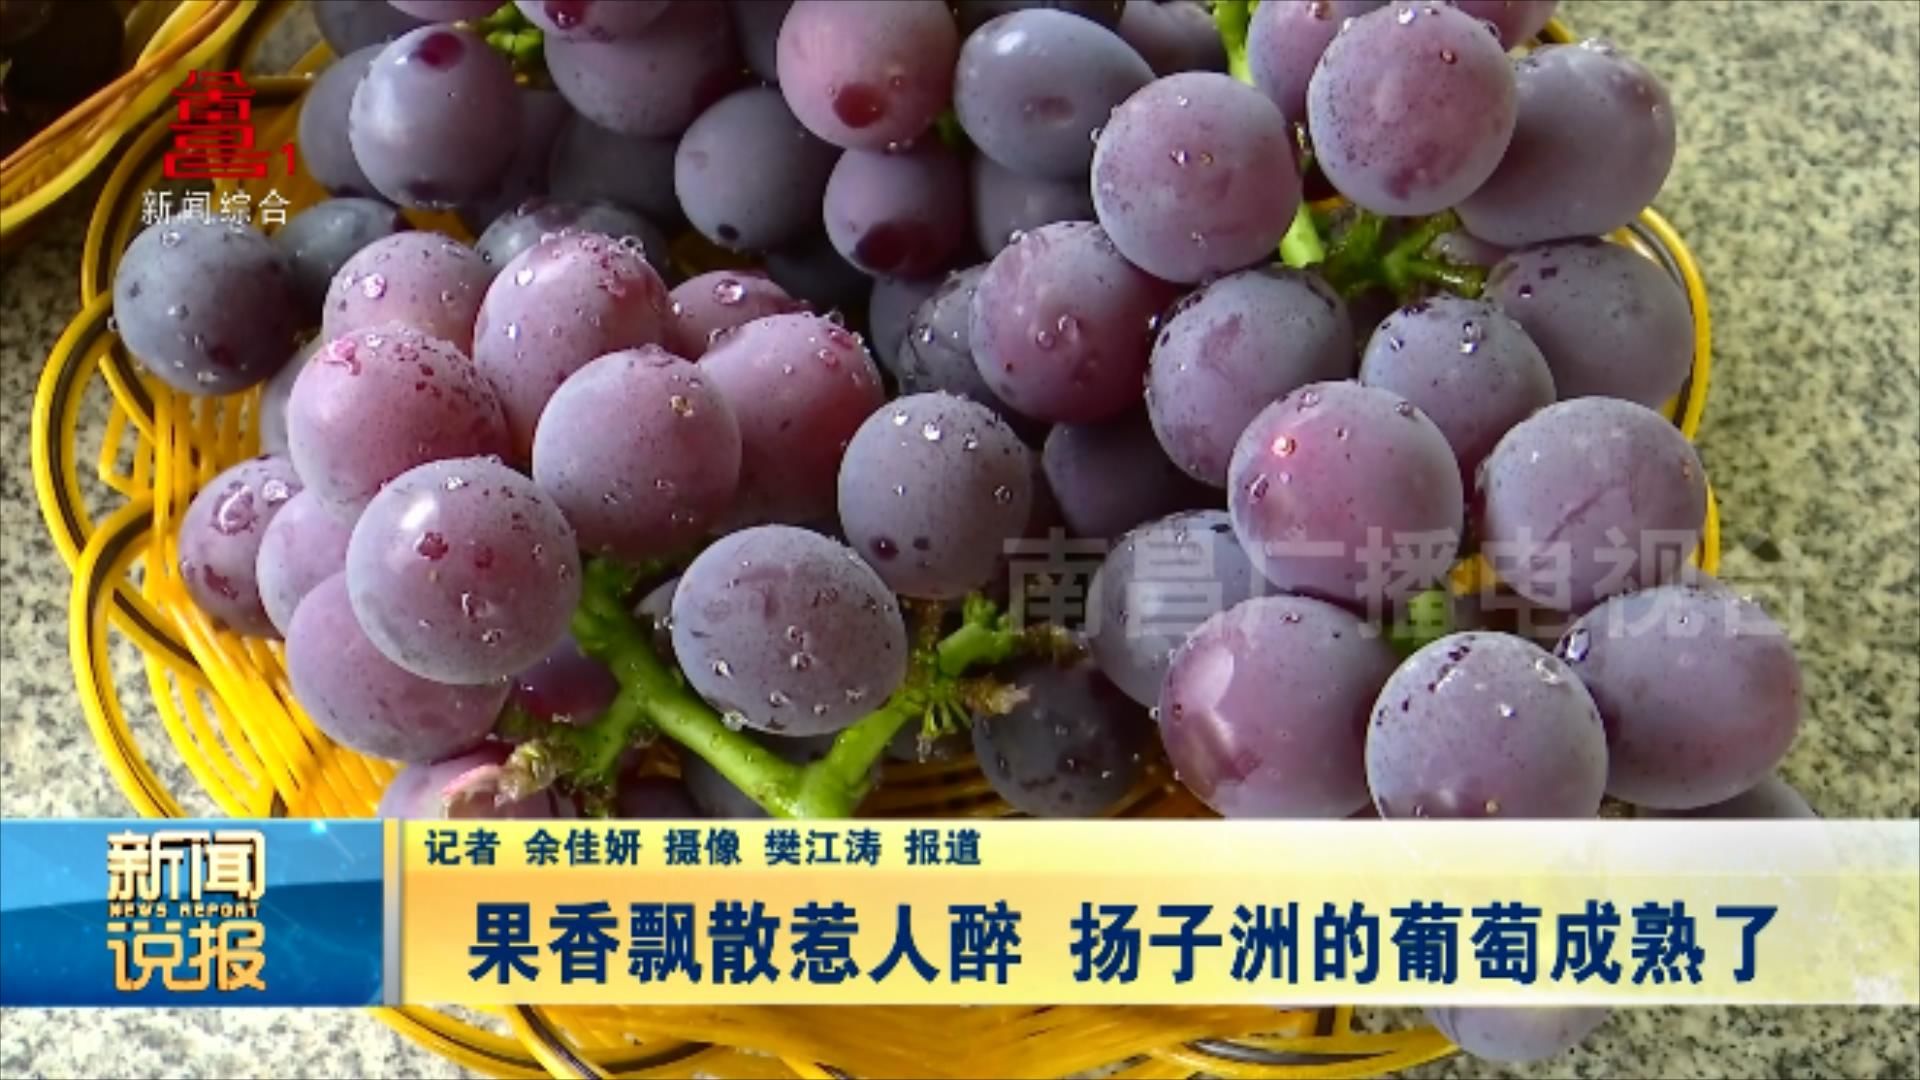 果香飘散惹人醉 扬子洲的葡萄成熟了